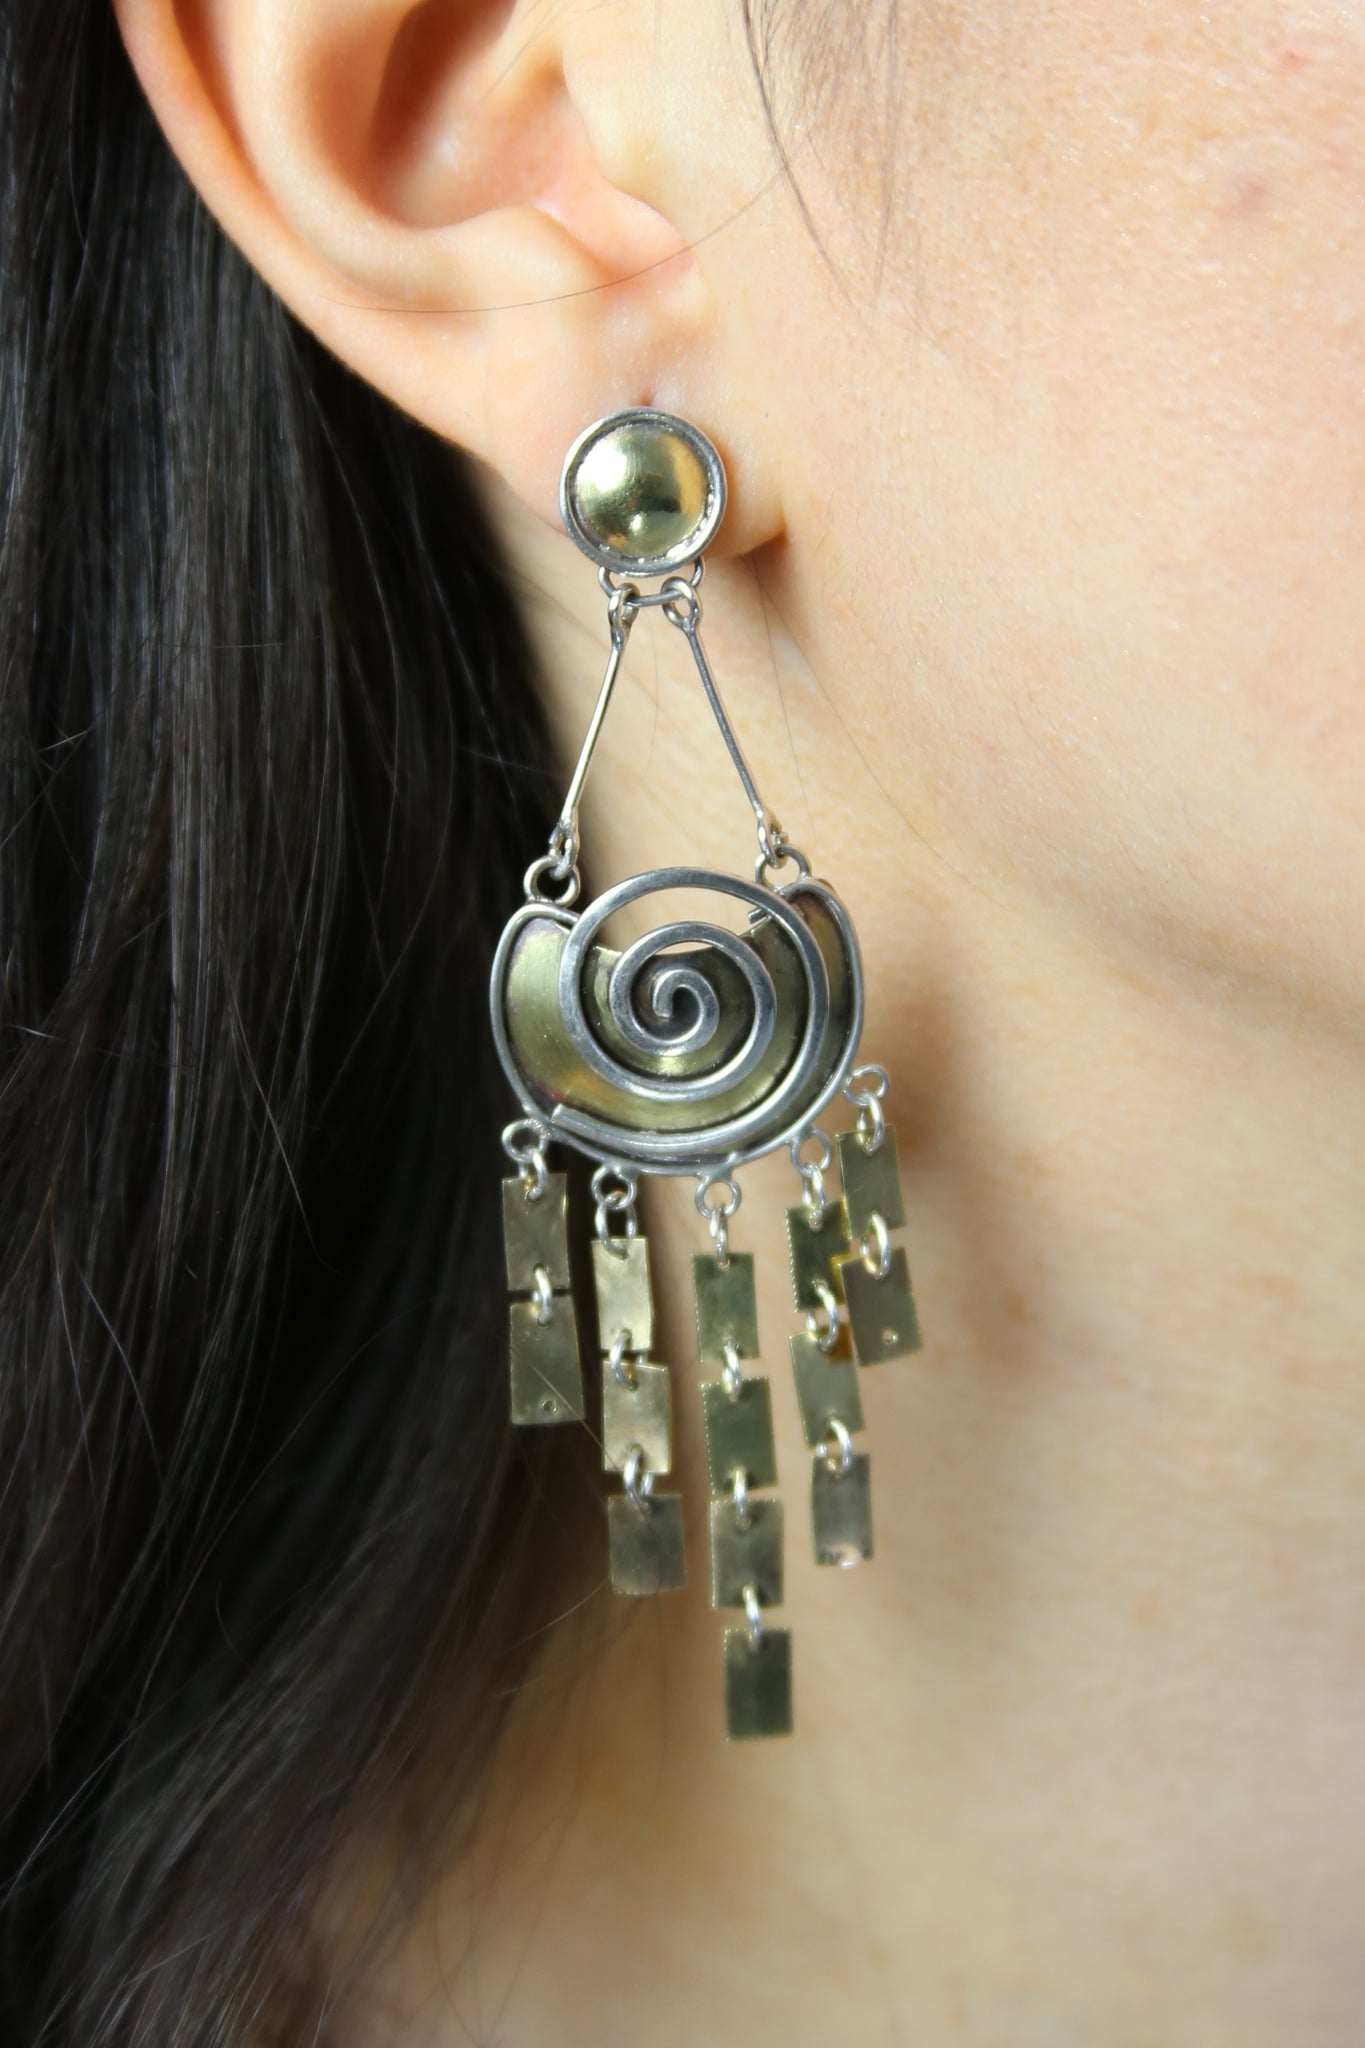 Inca Princess earrings